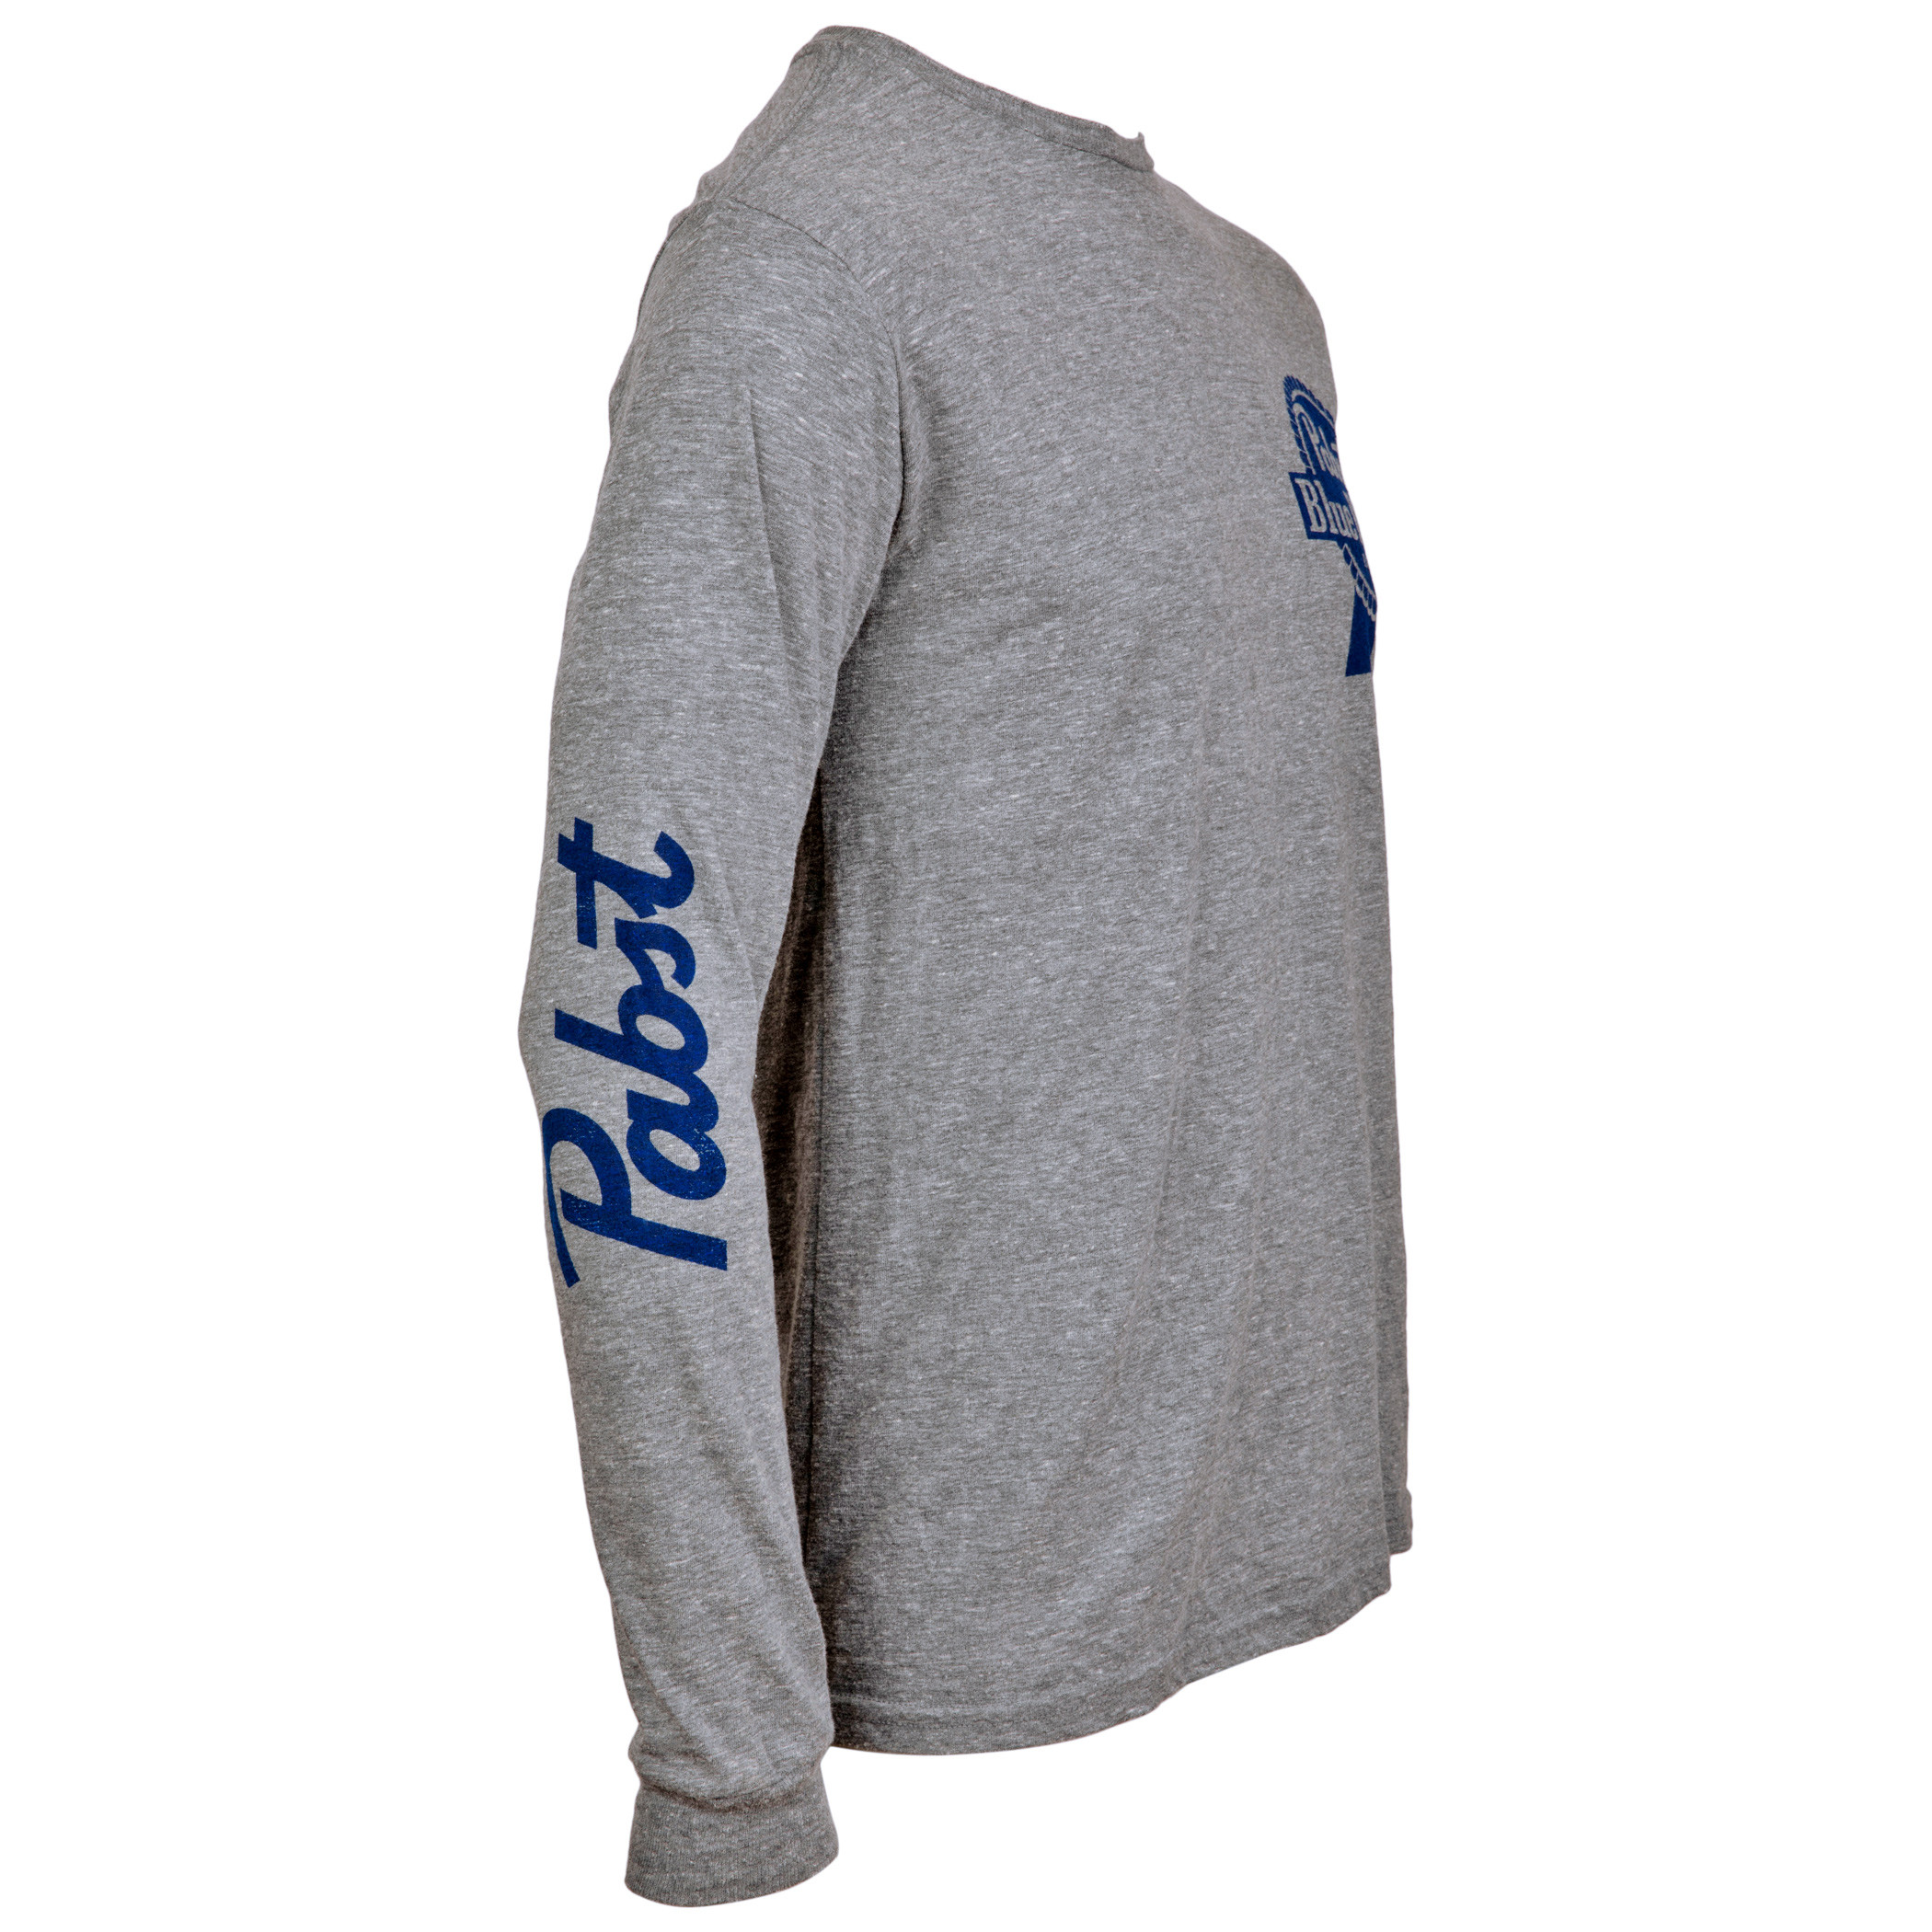 Pabst Blue Ribbon Beer Logo and Sleeve Print Long Sleeve Shirt